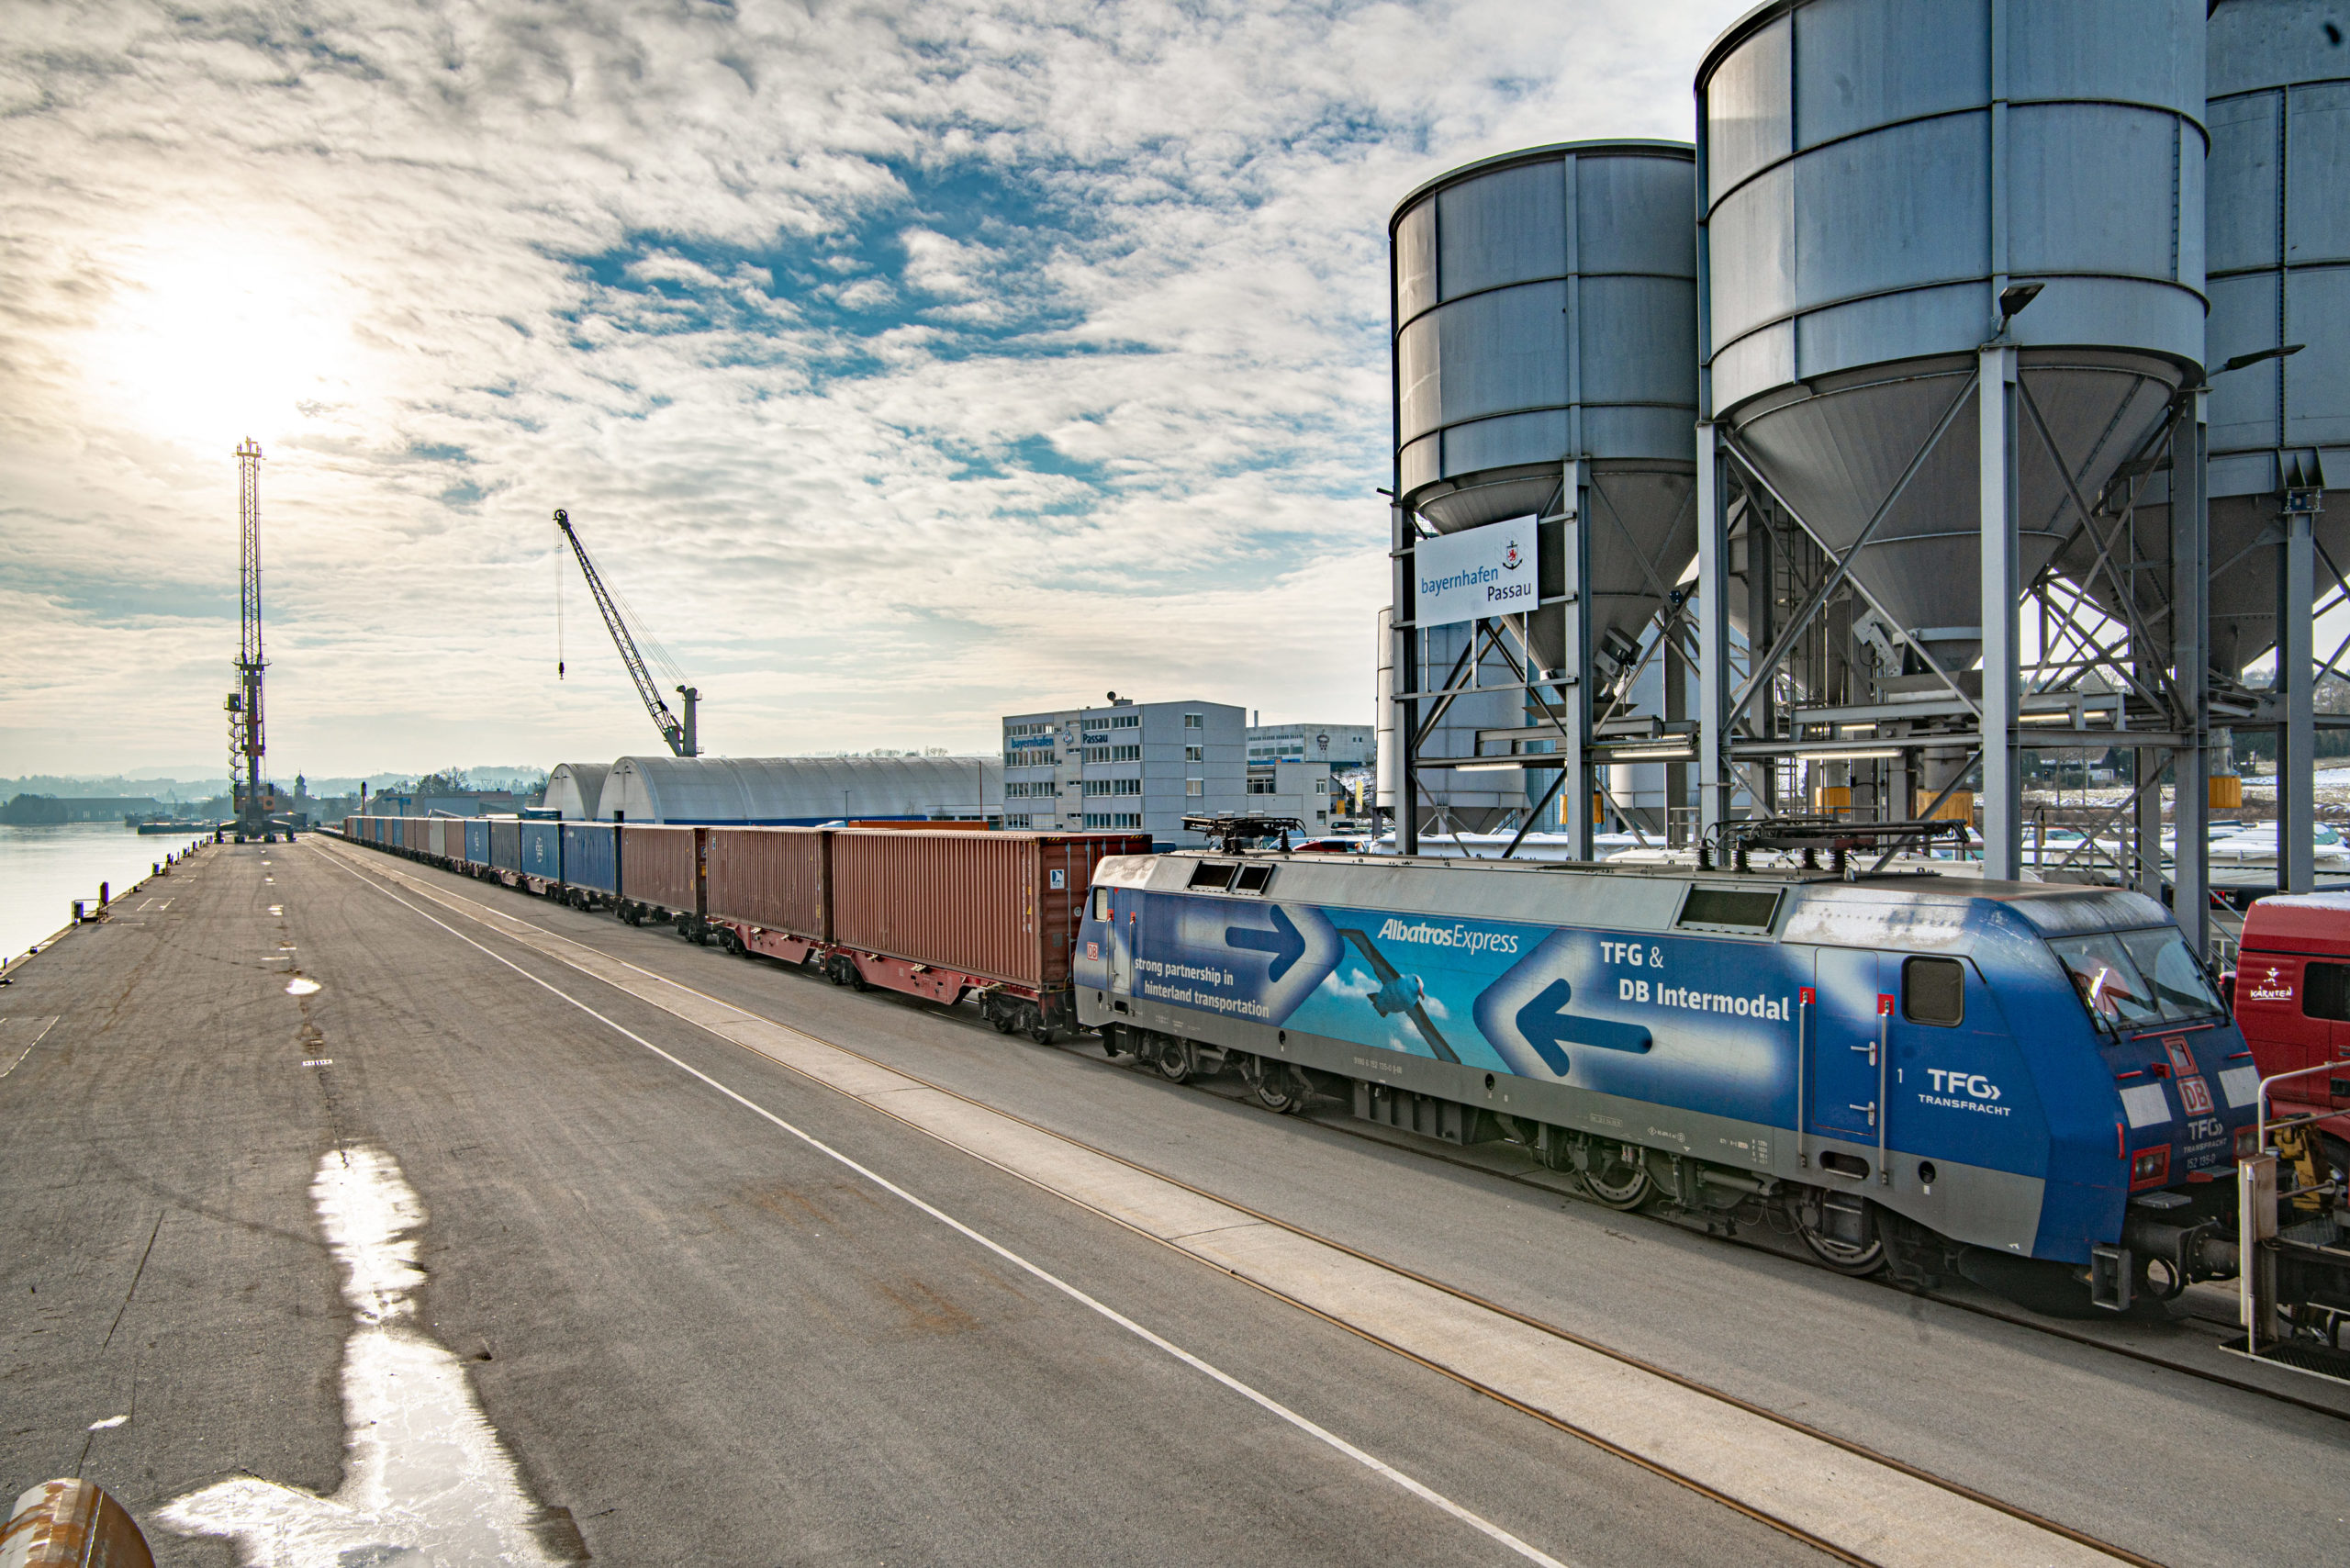 Intermodal-Containerzug am Kai des bayernhafen Passau, im Hintergrund Silos und Hafenkran